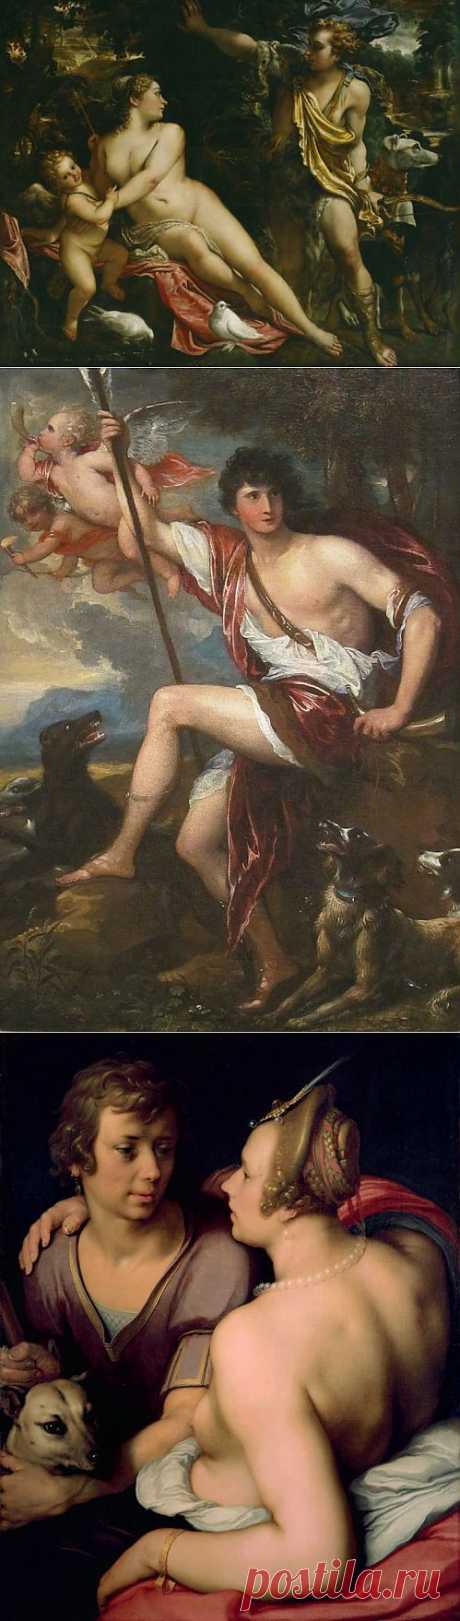 Афродитa и Адонис на полотнах знаменитых художников | Искусство